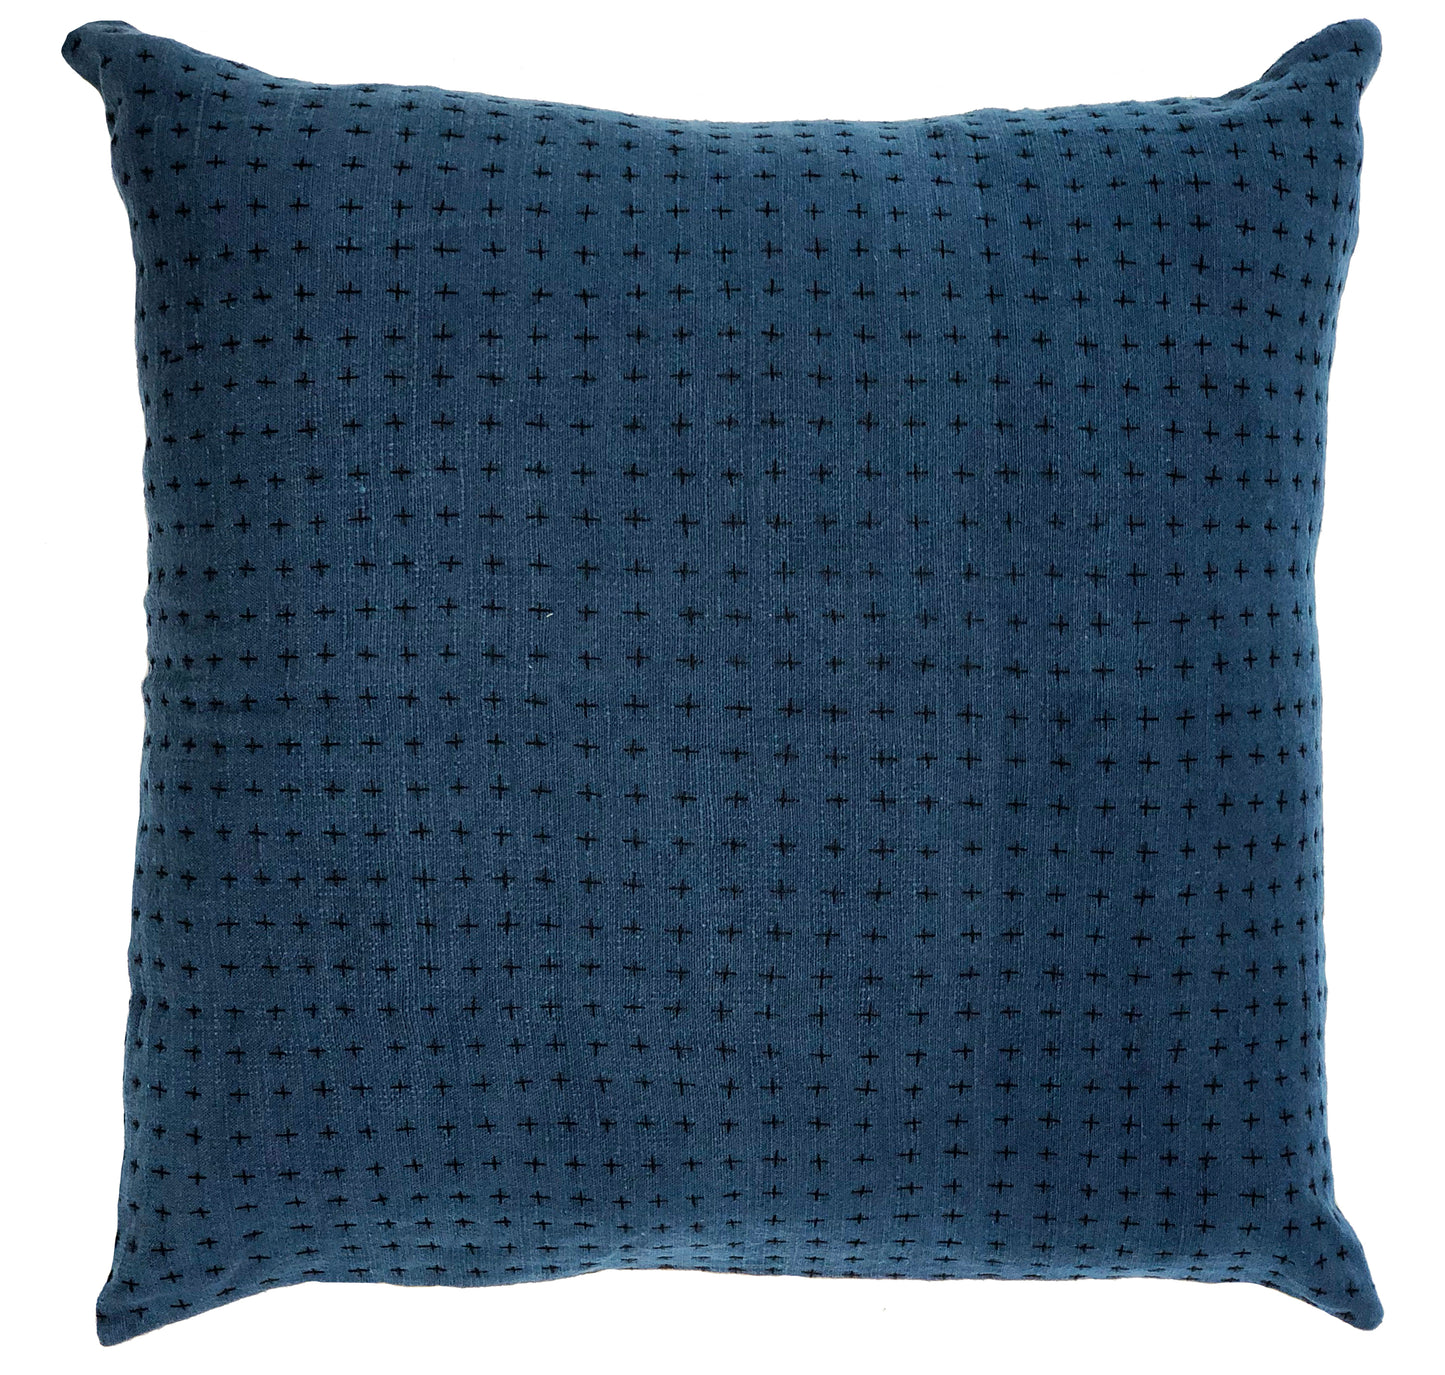 Indigo & Himalayan Pillow Cover 28x28in